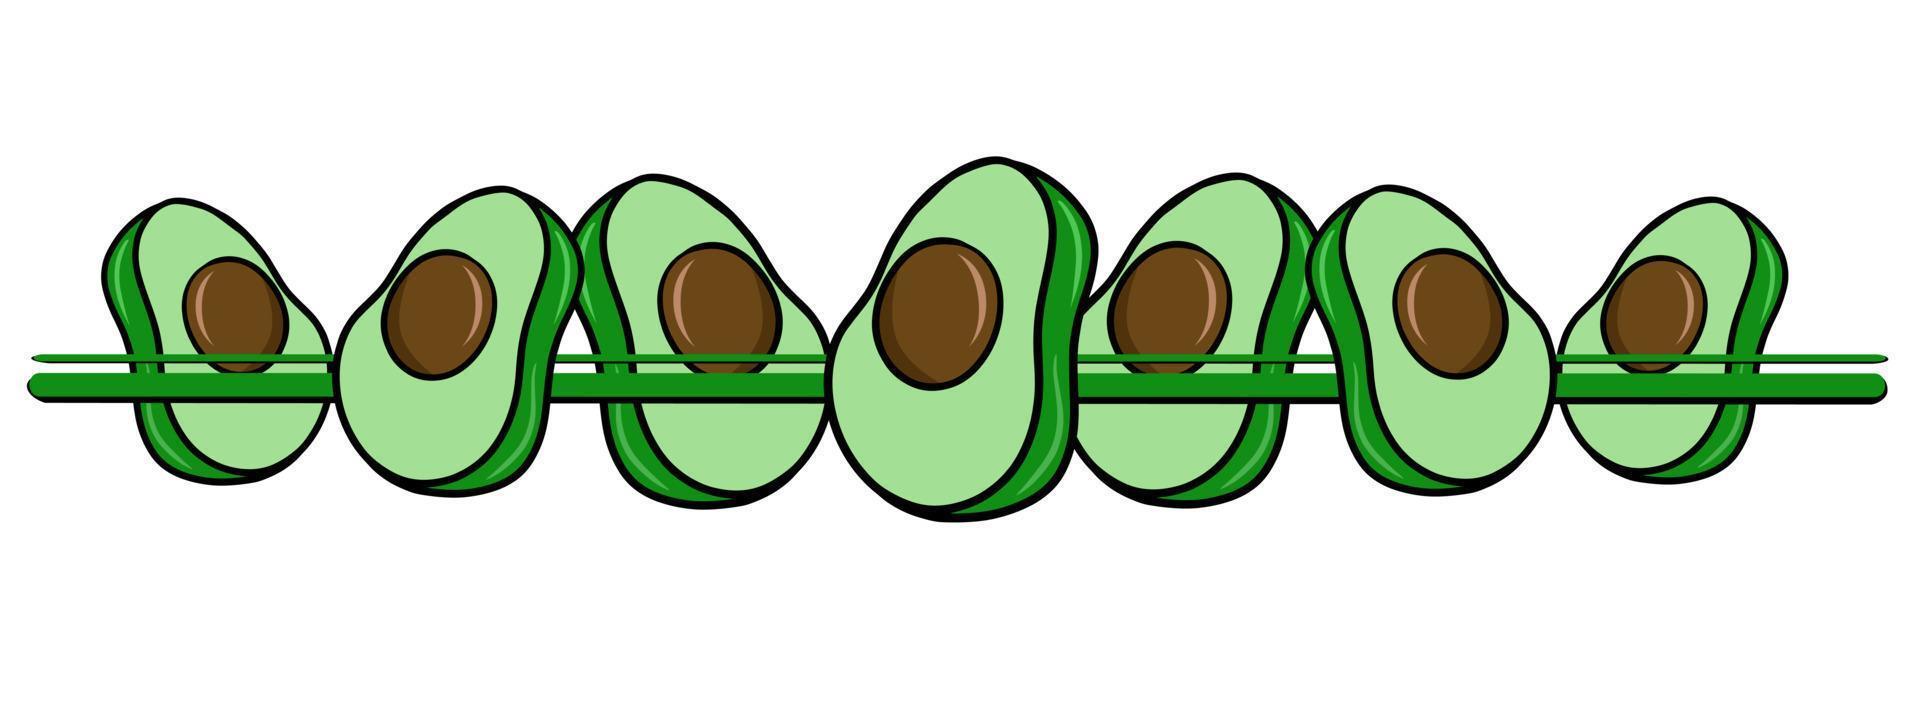 horizontaler Rand, Rand, grüne Hälften von Avocadofrüchten, Vektorillustration im Cartoon-Stil auf weißem Hintergrund vektor